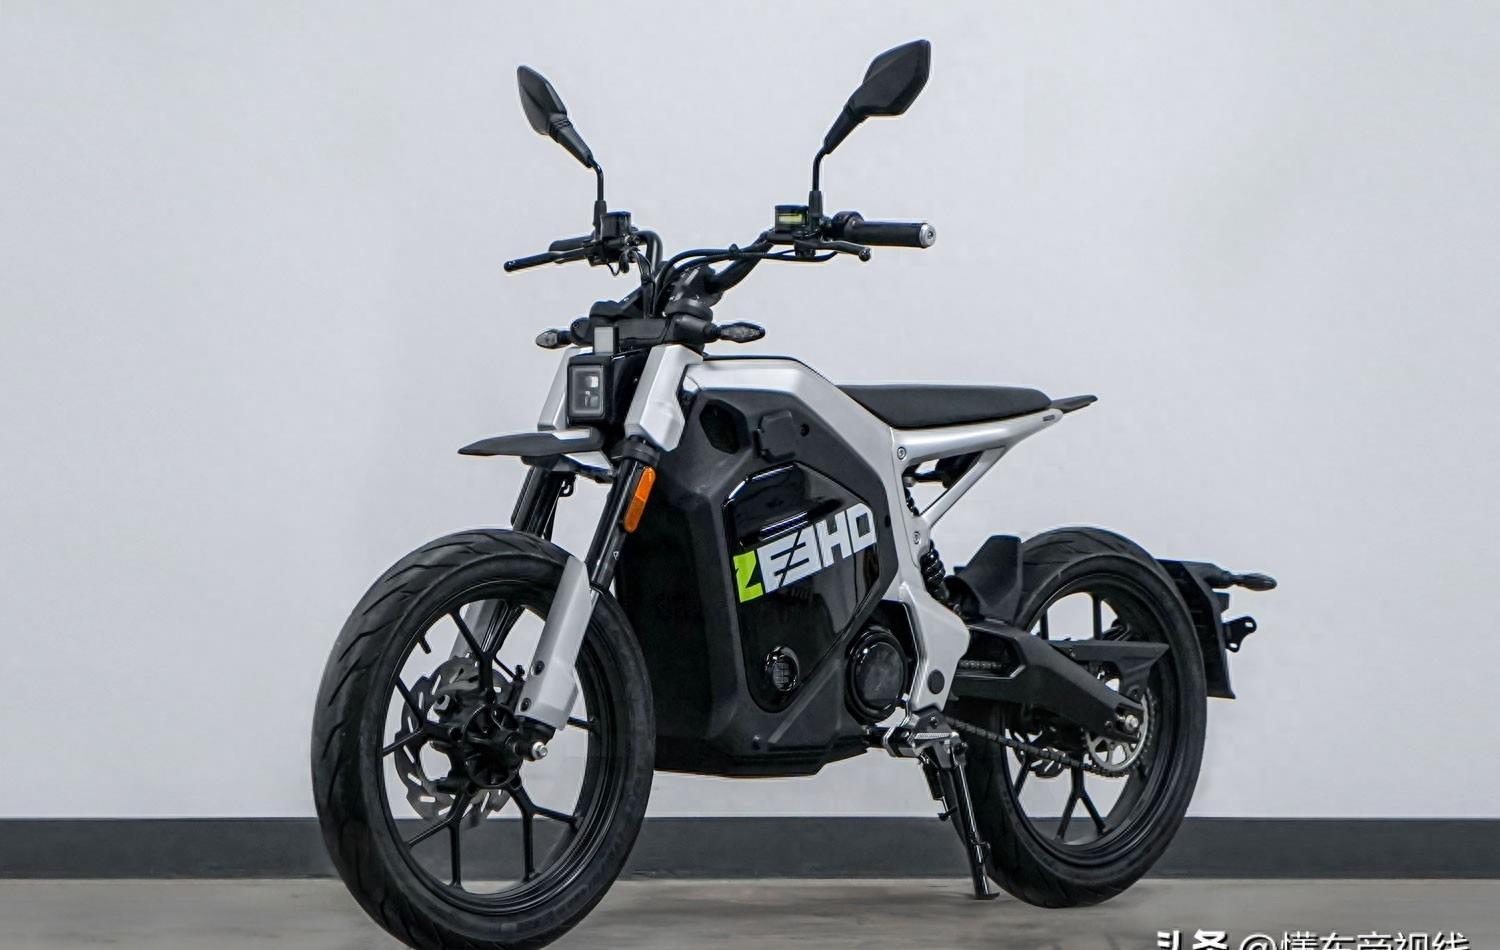 极核推出新款电动摩托车C!TY PLAY，预计将于11月7日在2023米兰国际摩托车展上亮相展出。该款车型拥有更大的电池仓，预计续航里程将会更长。C!TY PLAY系列是ZEEHO极核旗下的电动摩托车品